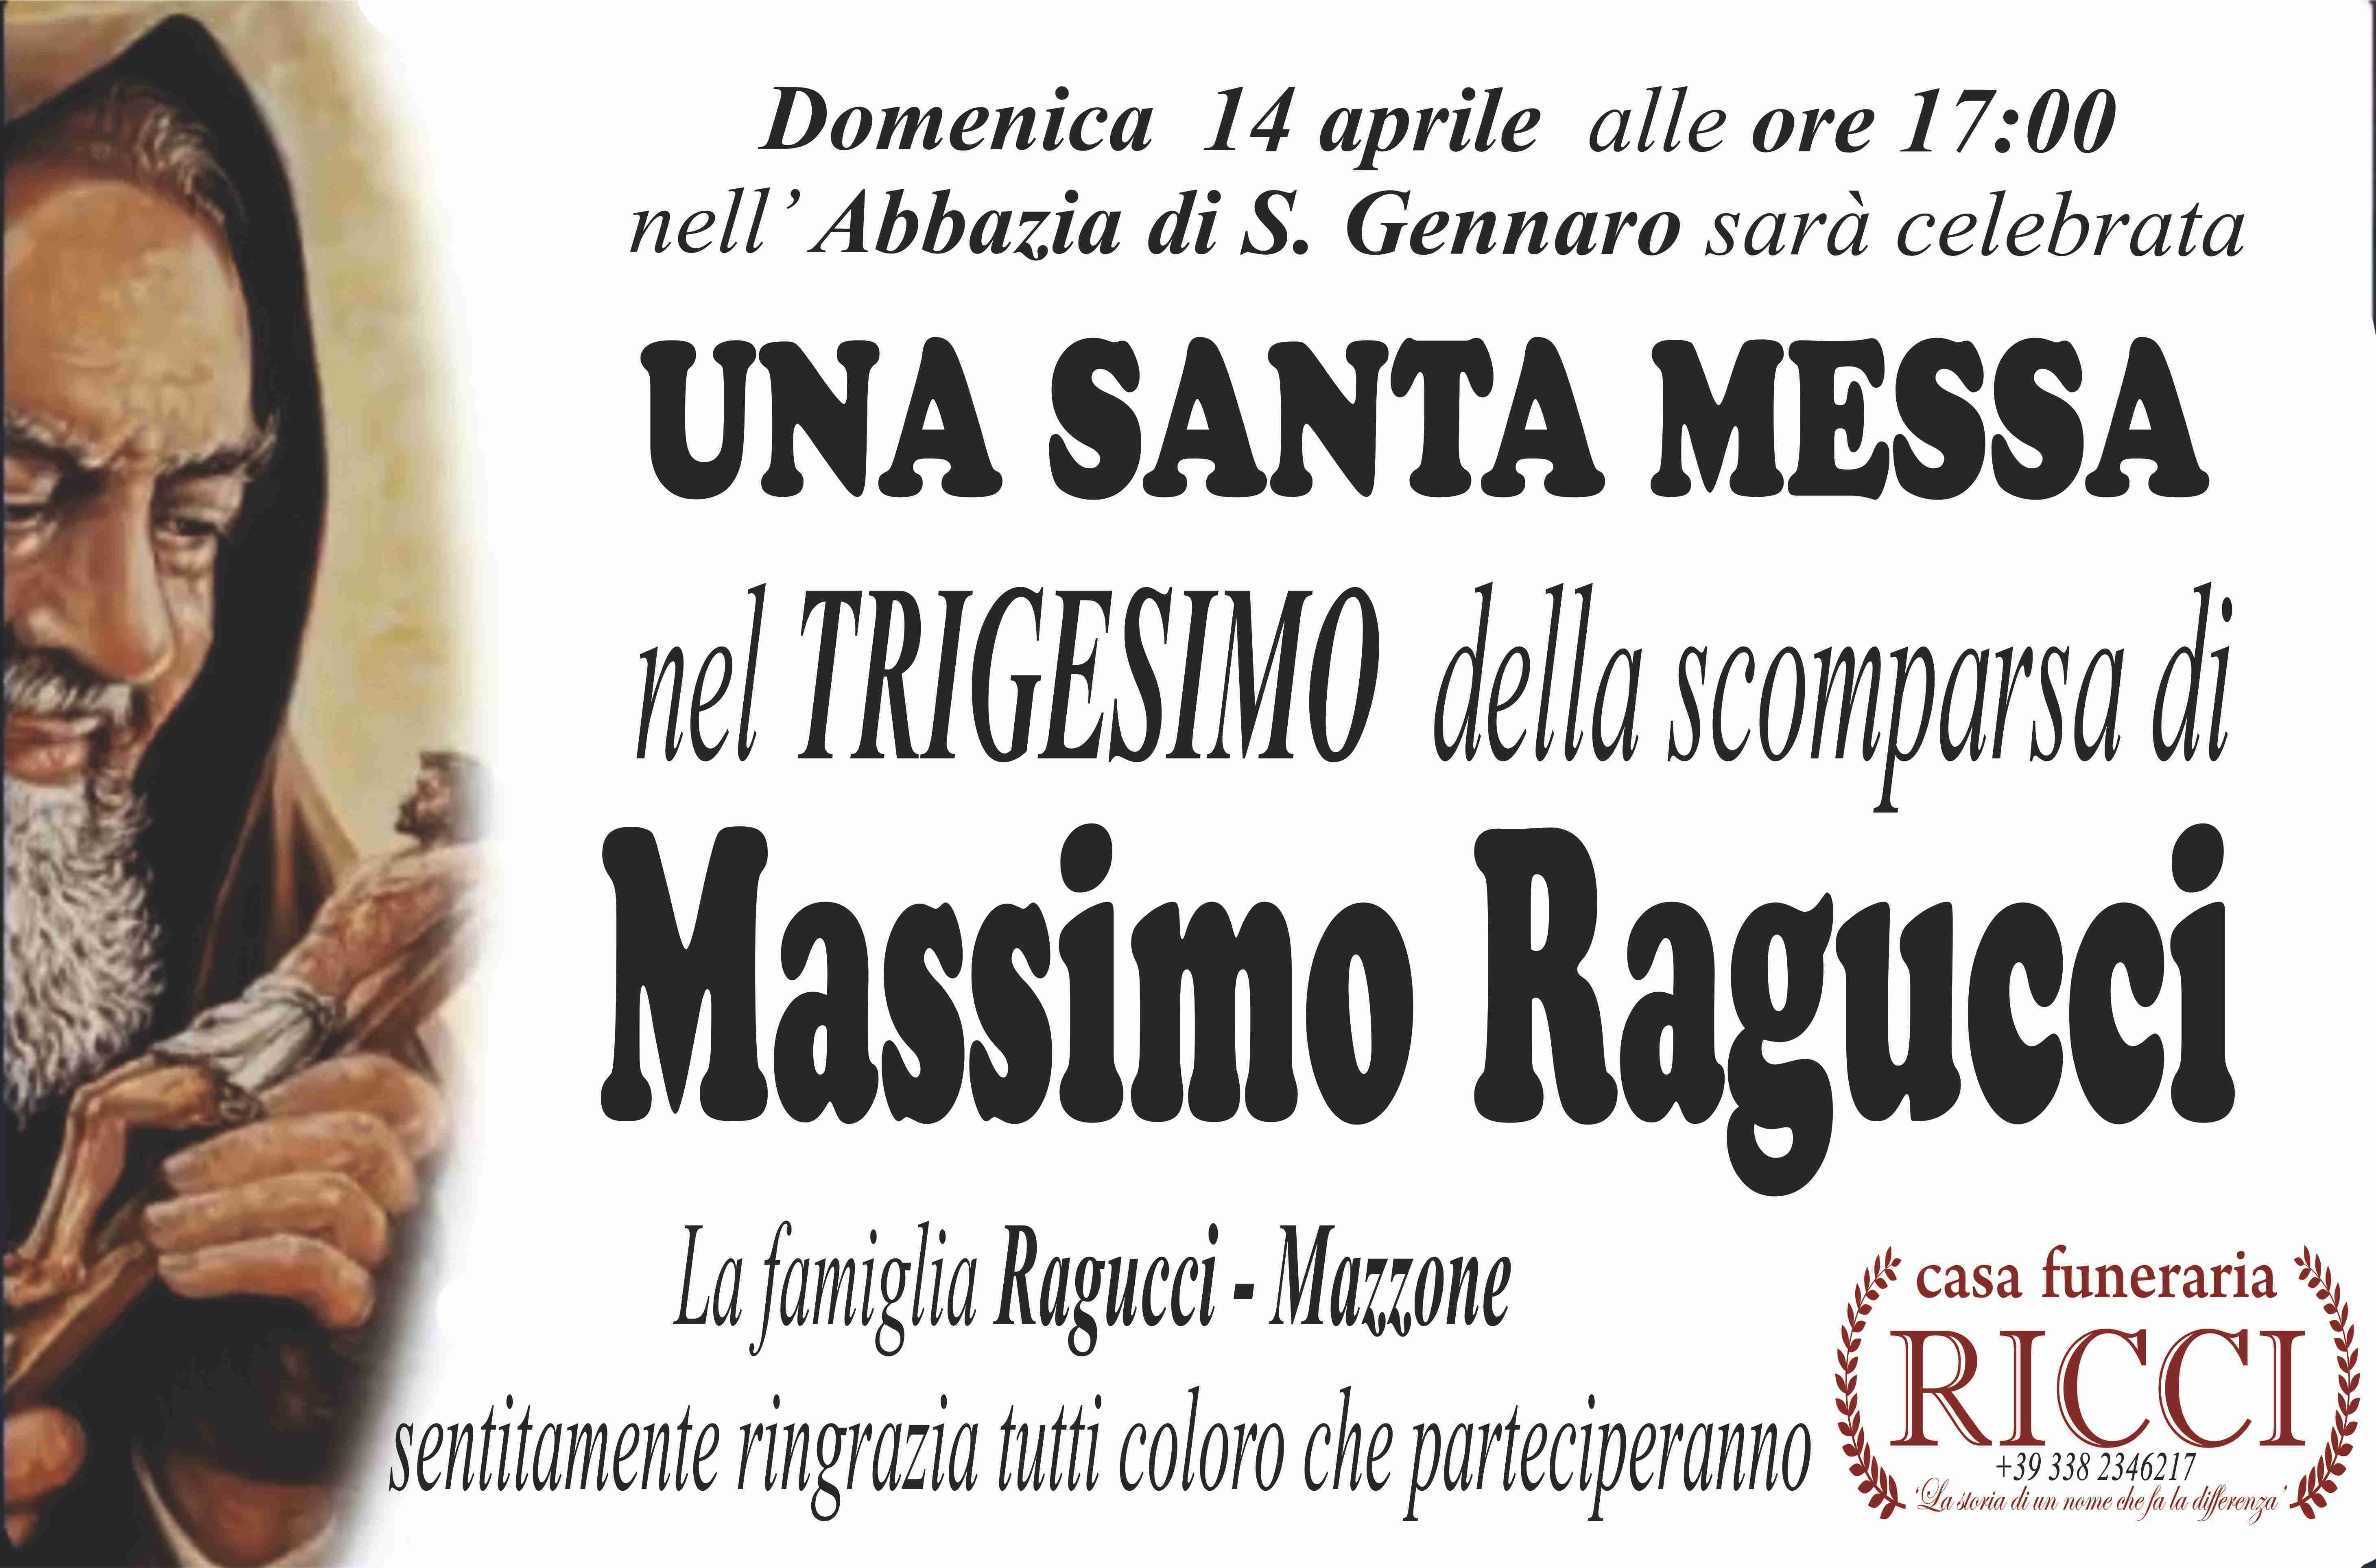 Massimo Ragucci